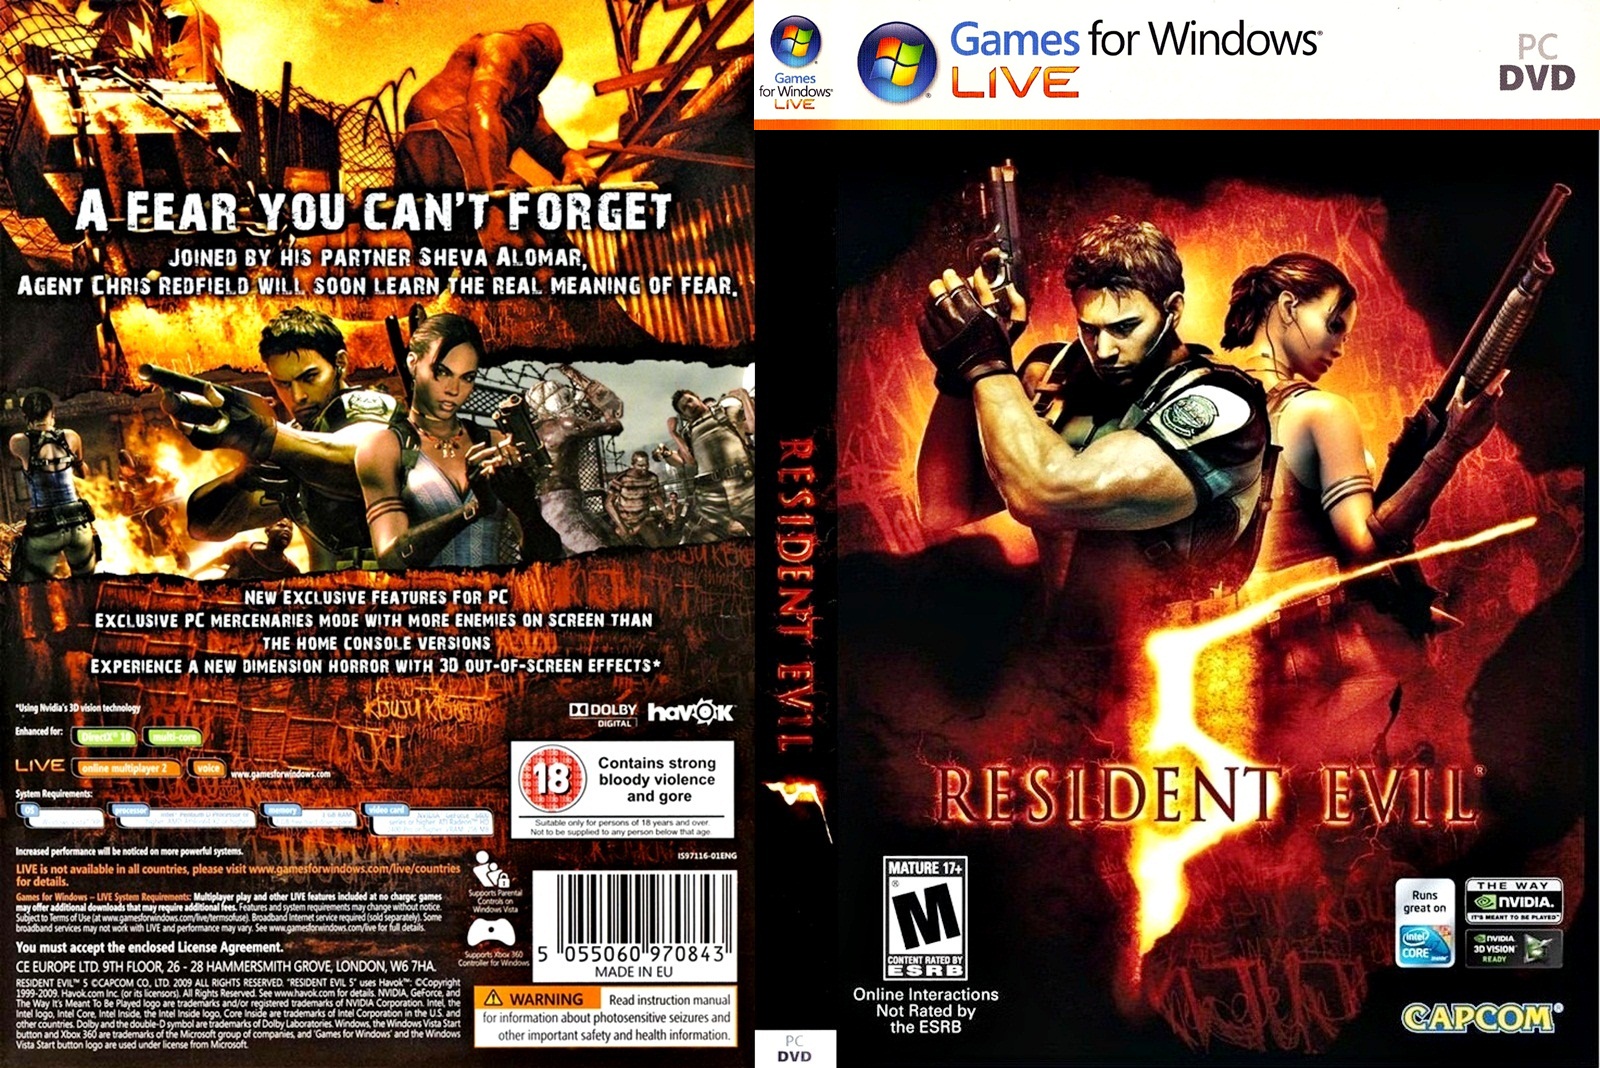 download games torrent full: DOWNLOAD Resident Evil 5 ( PC )